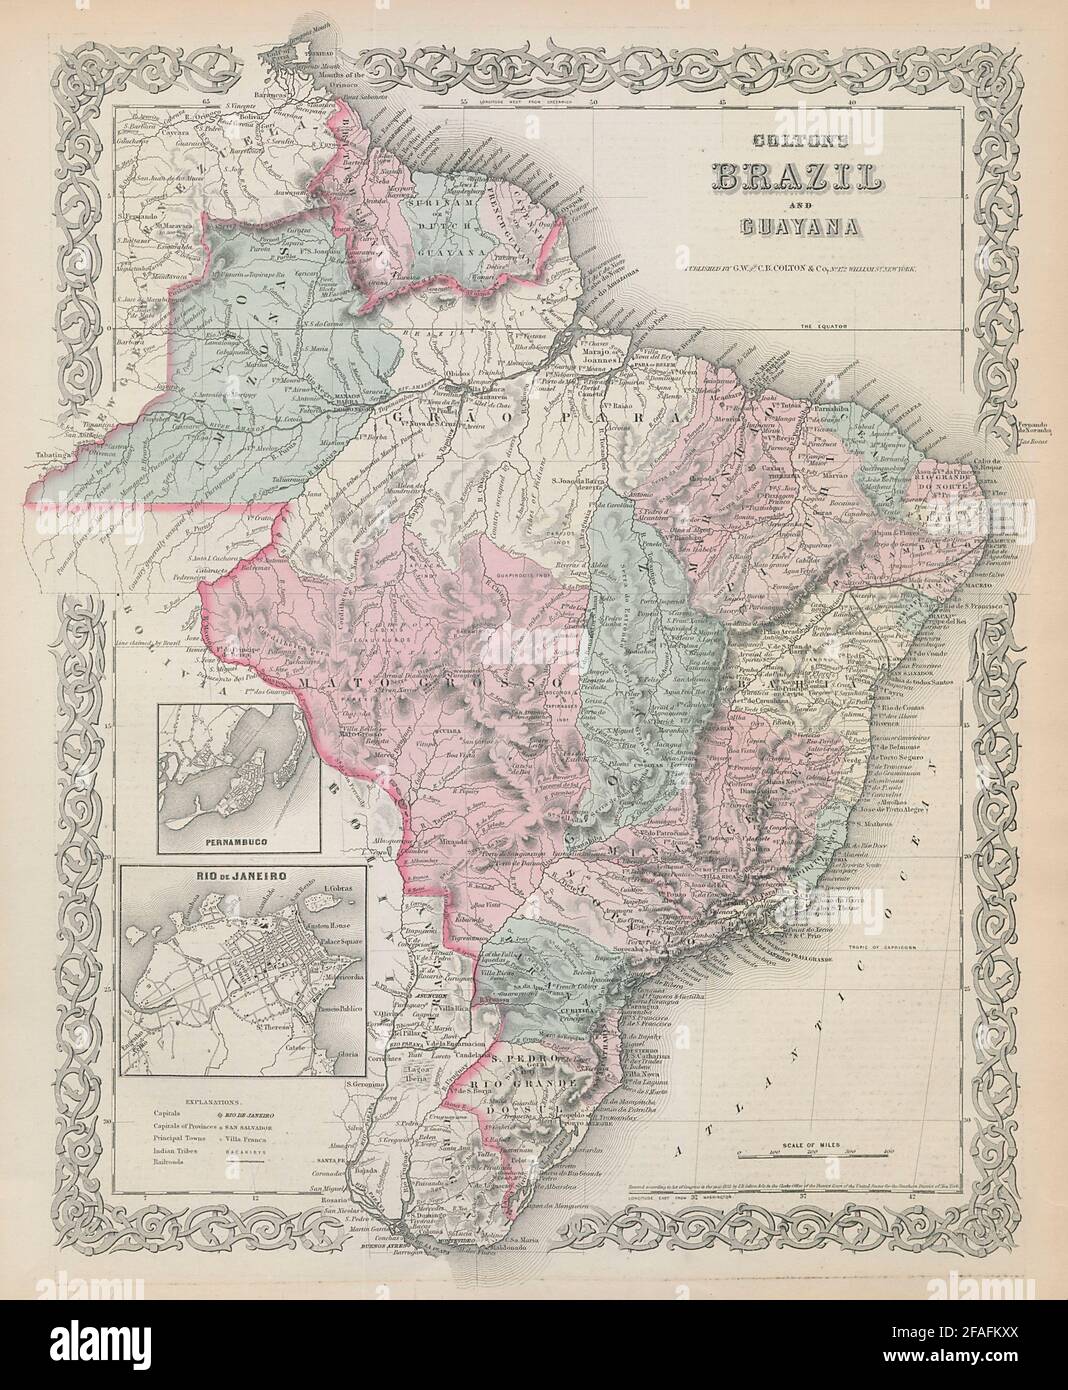 Colton's Brazil & Guayana. Rio de Janeiro plan. Guyanas. Antique map 1869 Stock Photo